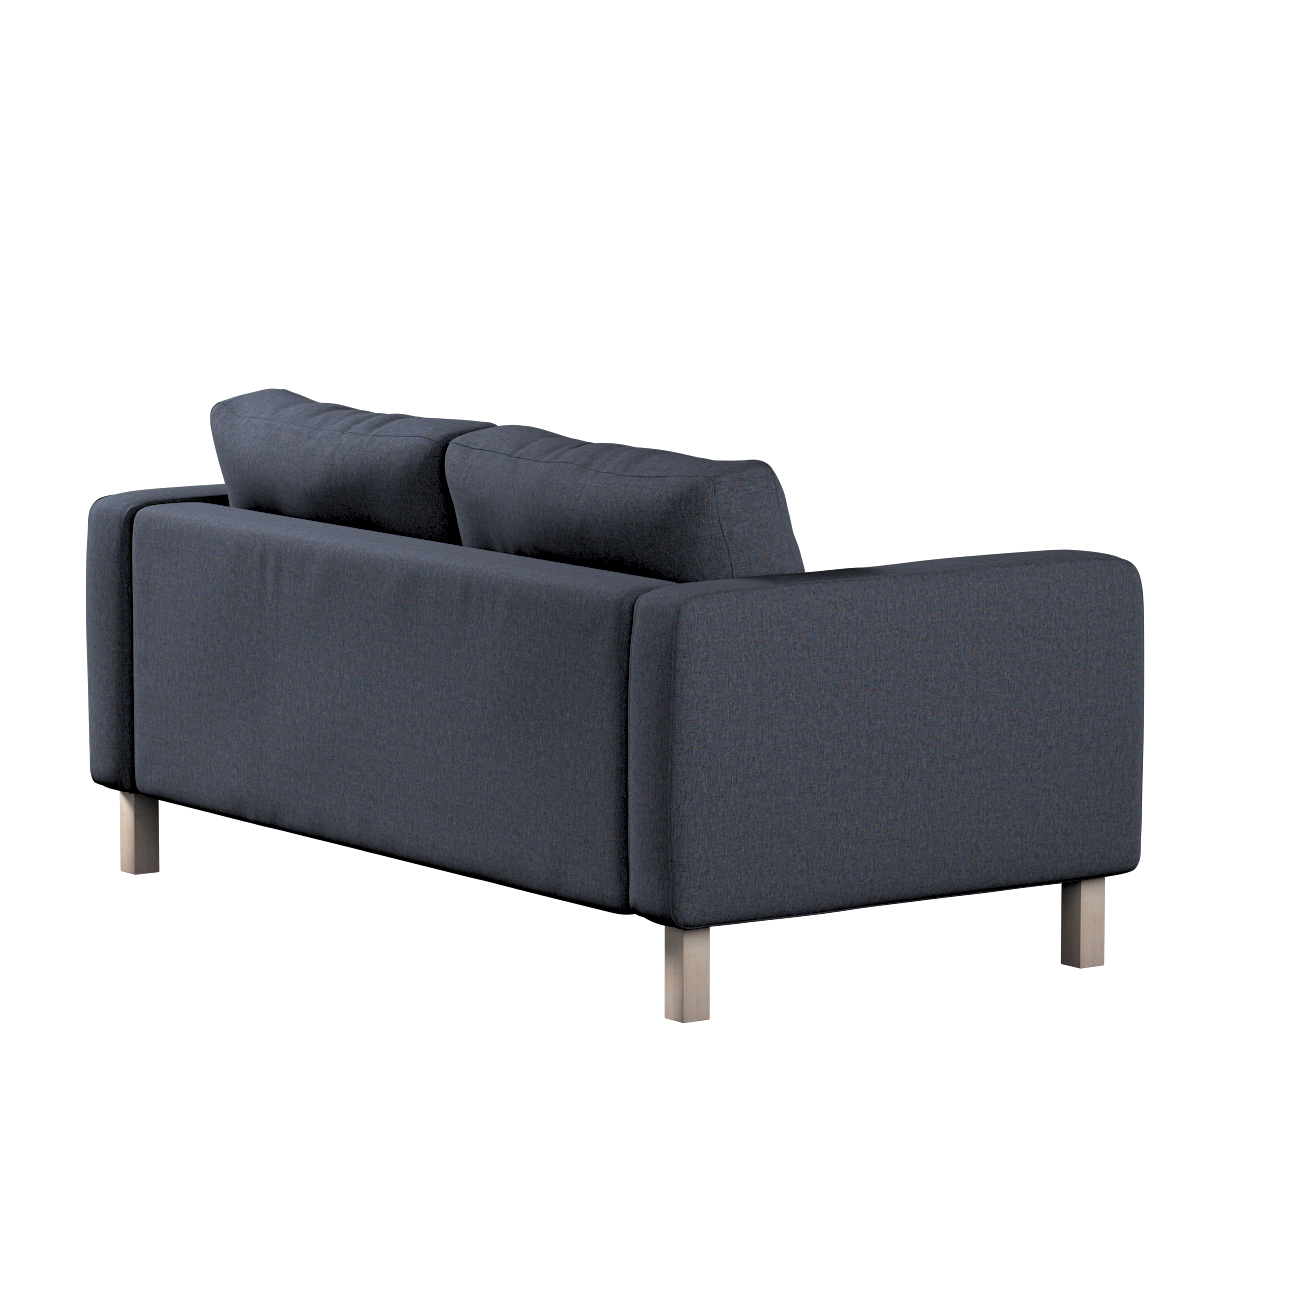 Bezug für Karlstad 2-Sitzer Sofa nicht ausklappbar, dunkelblau, Sofahusse, günstig online kaufen